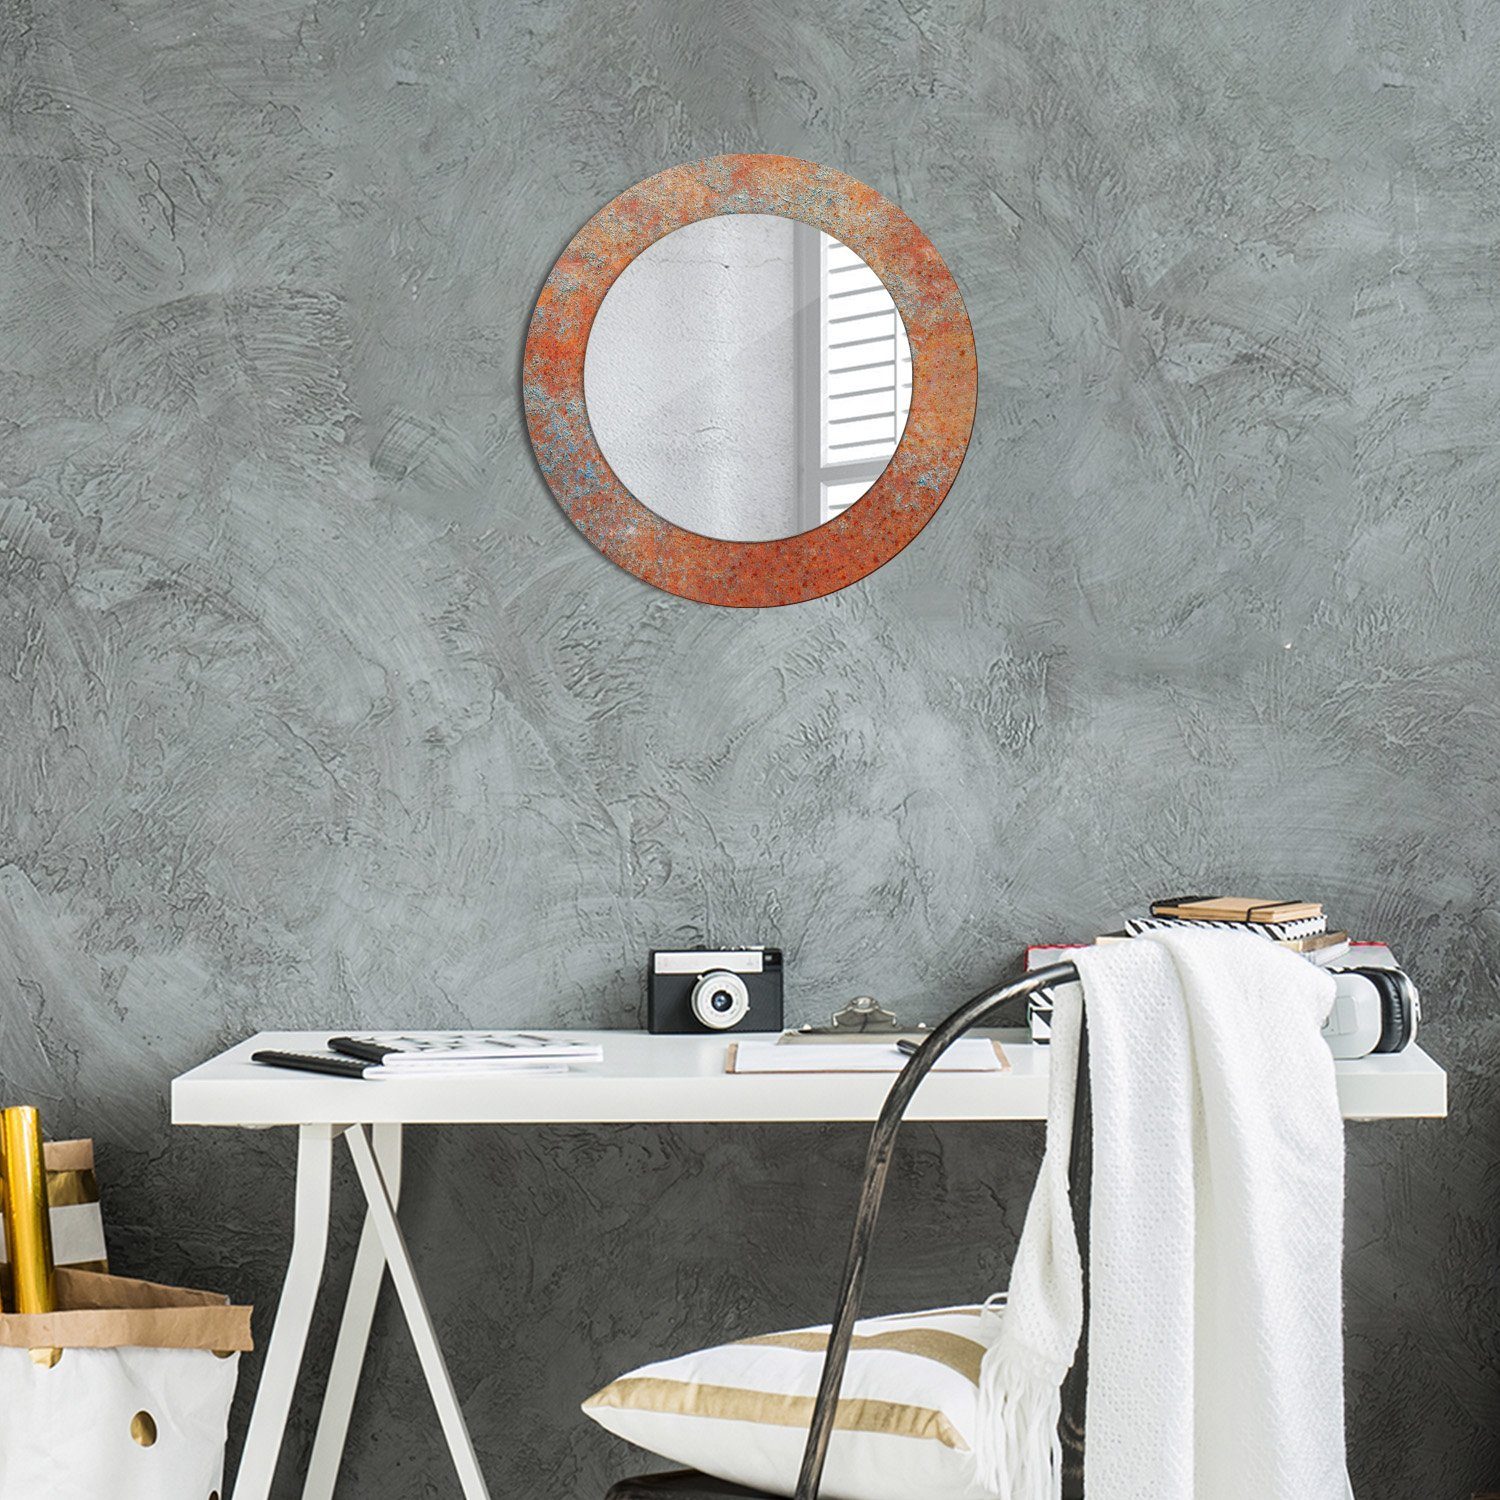 Tulup Spiegel Modern mit Aufdruck Ø50cm Wandmontage Rund: Spiegel Rostig Wandspiegel Metall